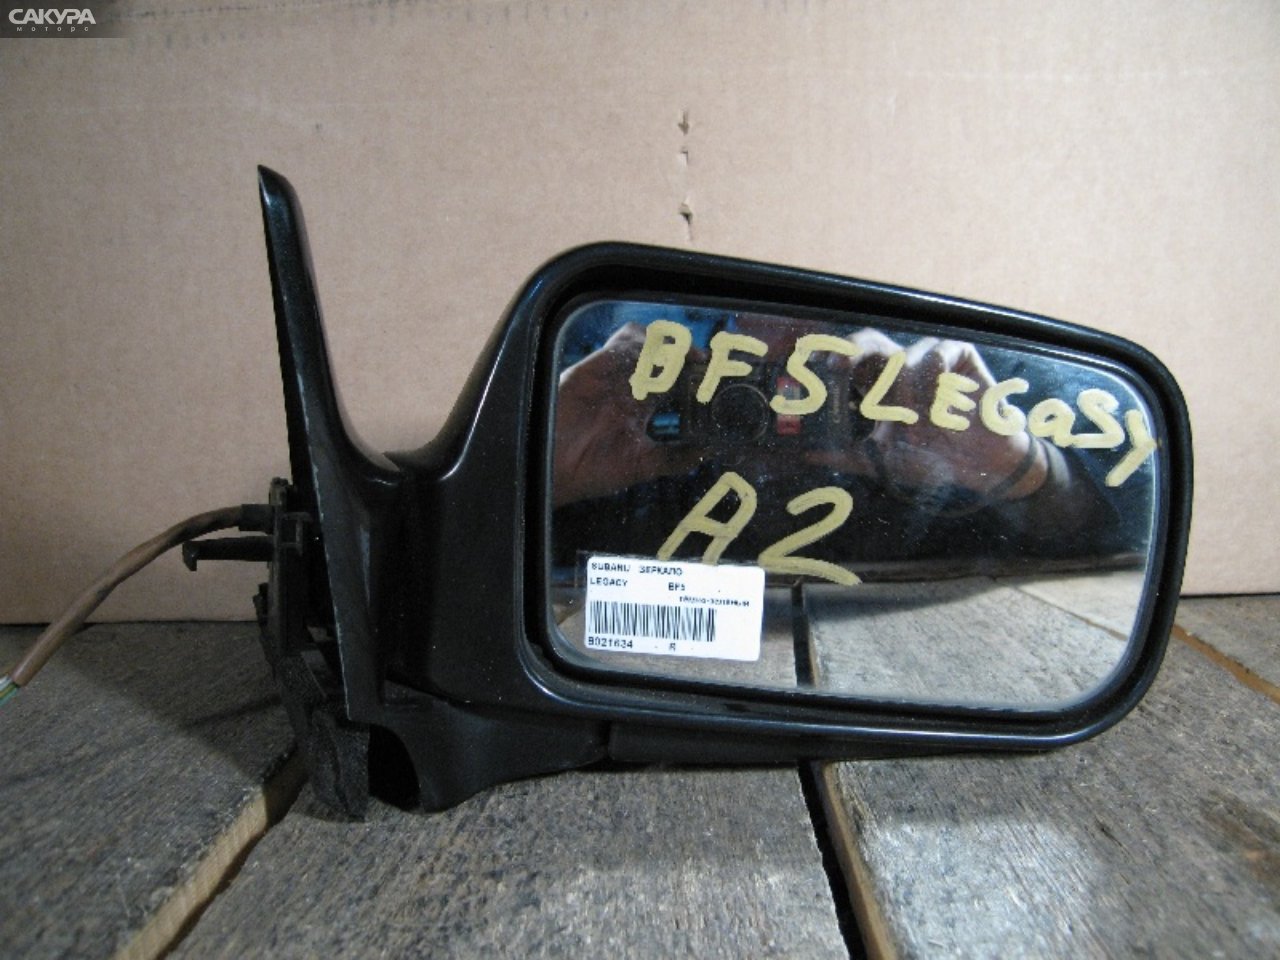 Зеркало боковое правое Subaru Legacy BF5: купить в Сакура Абакан.